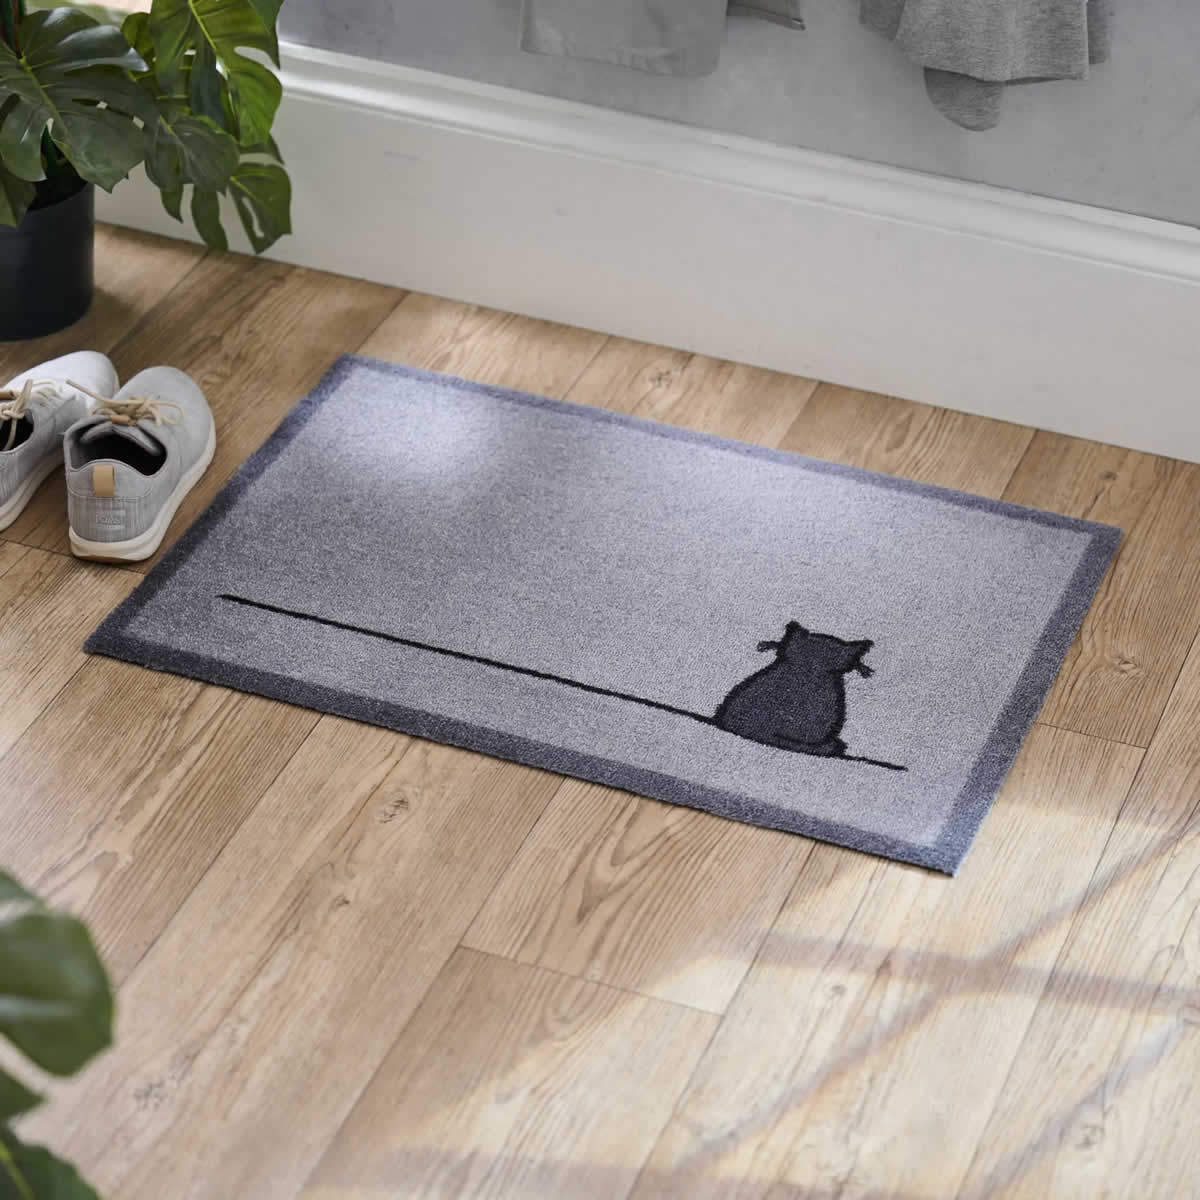 Sitting Cat Doormat in Hallway